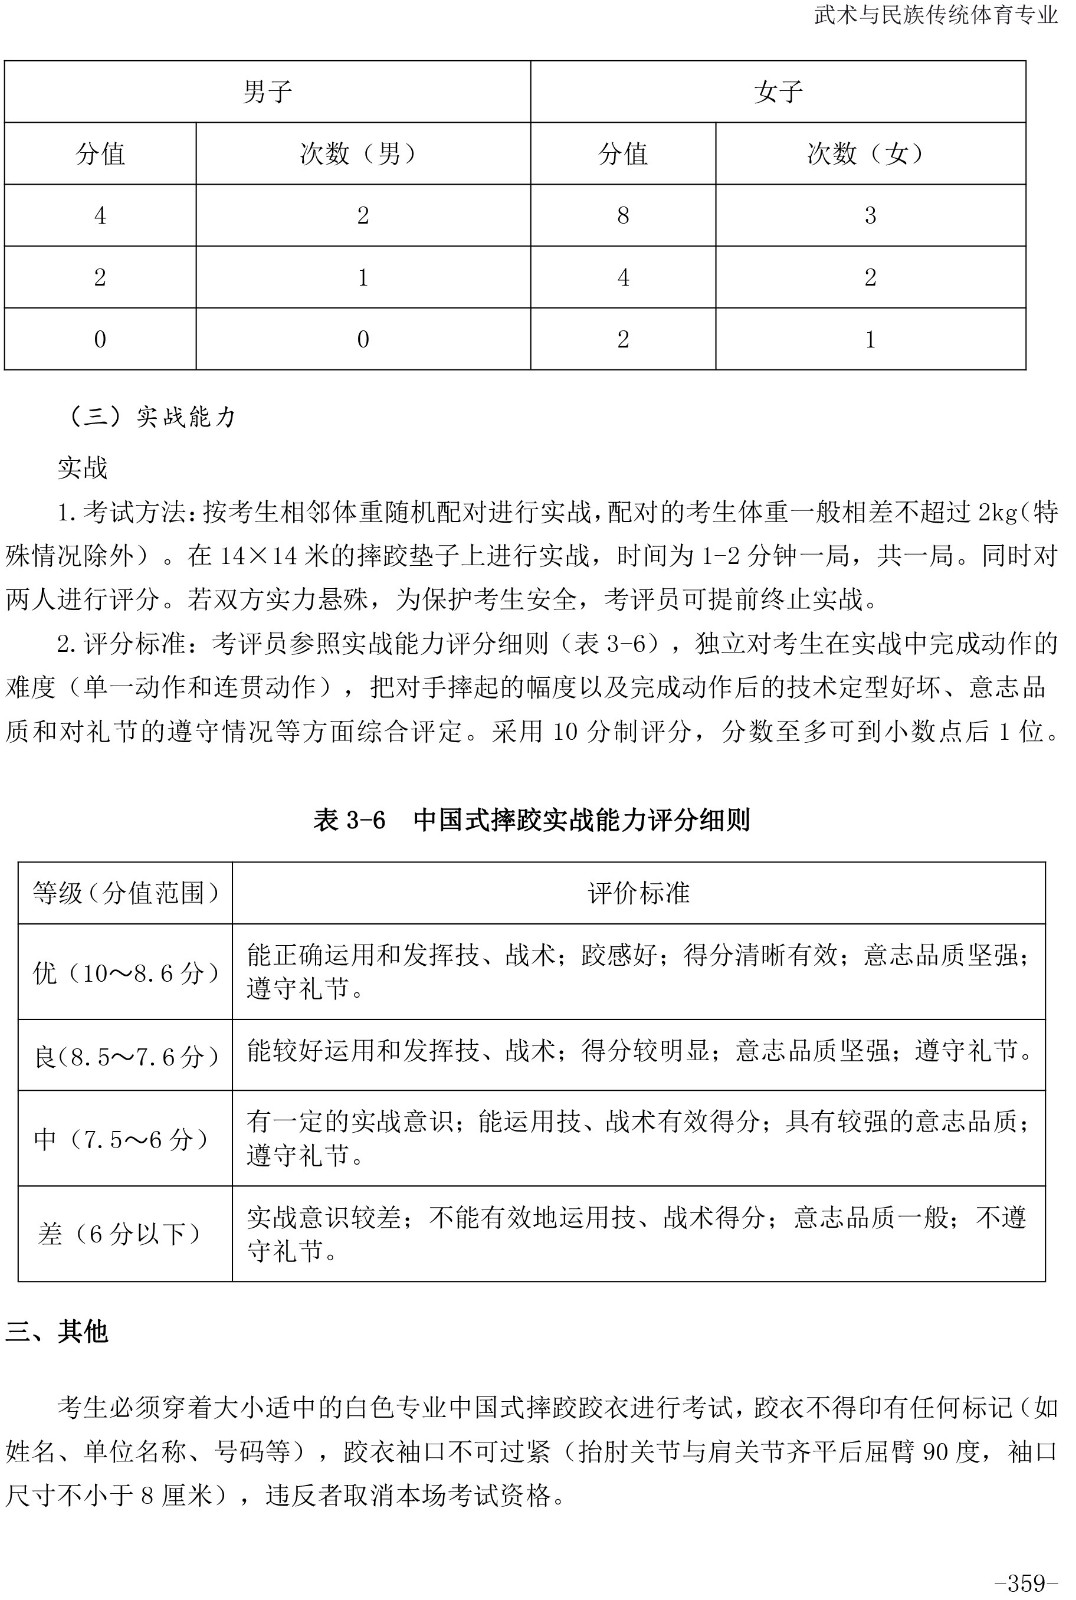 2020年体育单招专项（中国式摔跤）考试与评分标准